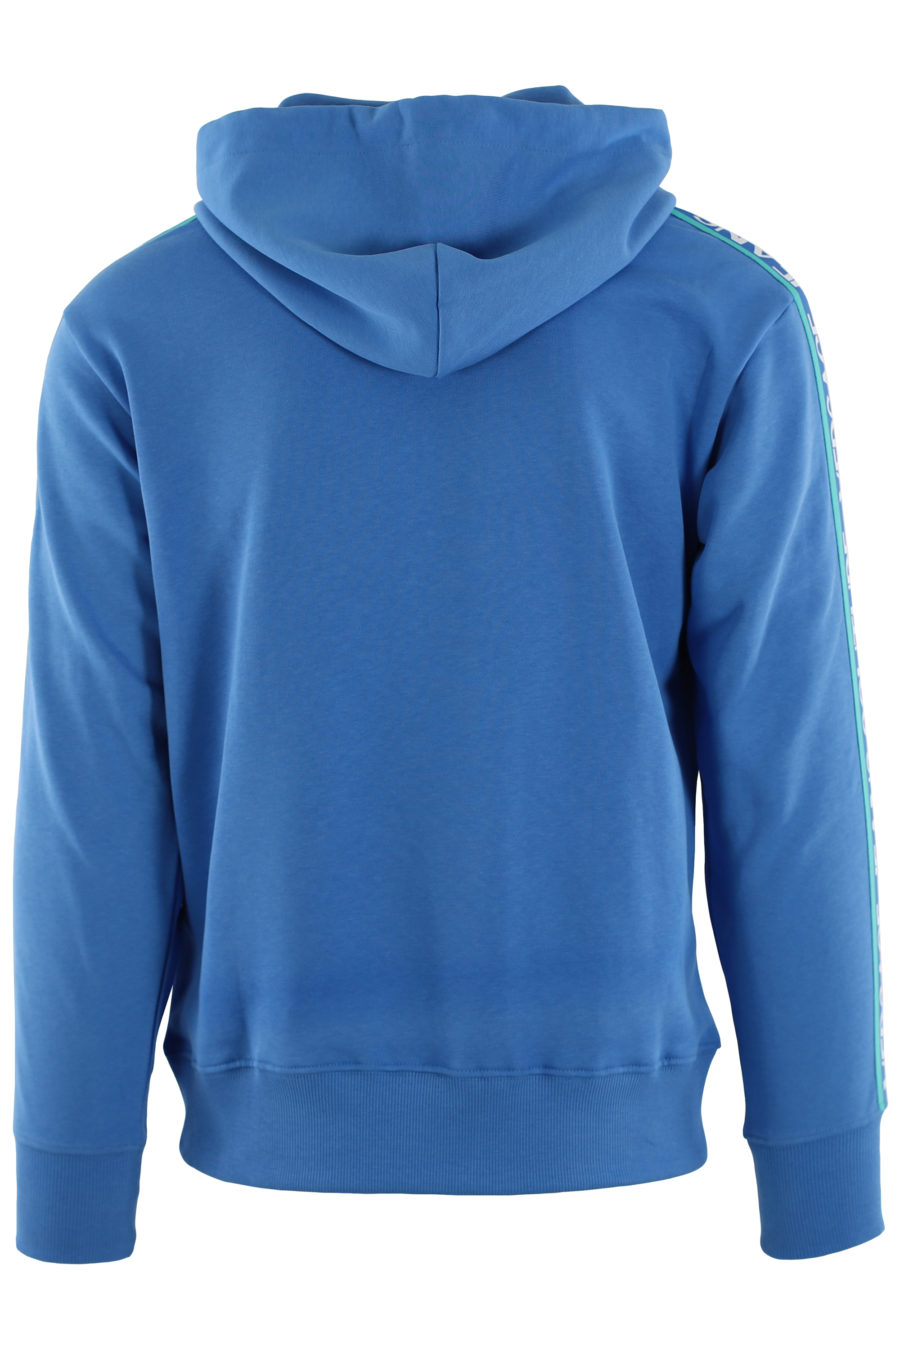 Camisola azul com capuz e fita azul com logótipo - IMG 0453